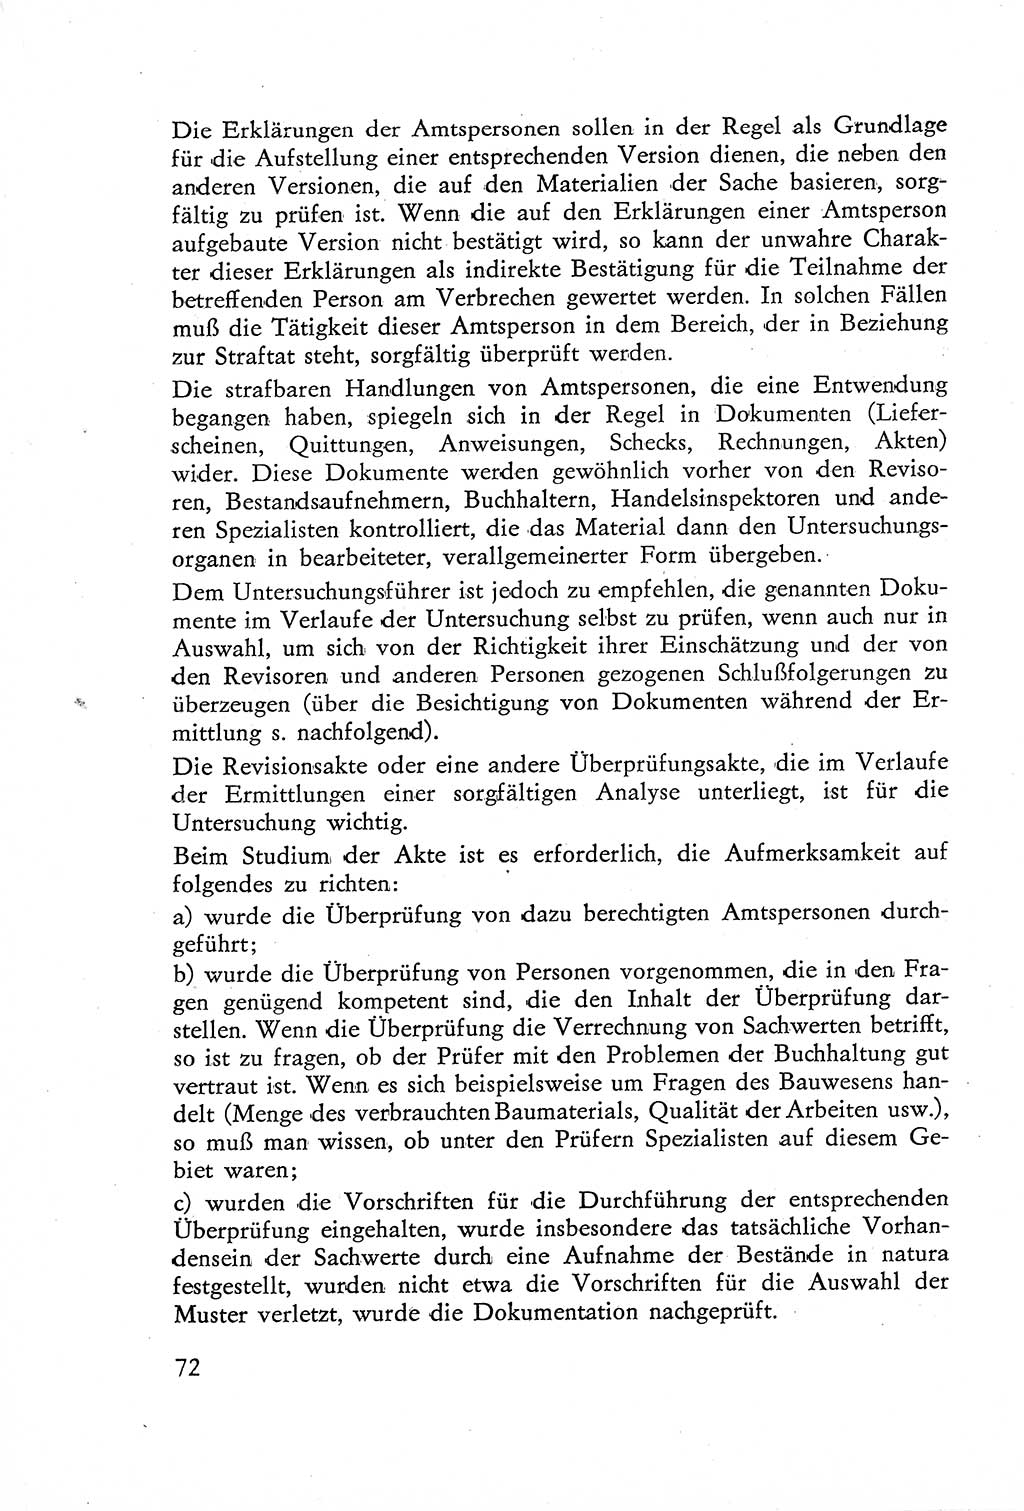 Die Untersuchung einzelner Verbrechensarten [Deutsche Demokratische Republik (DDR)] 1960, Seite 72 (Unters. Verbr.-Art. DDR 1960, S. 72)